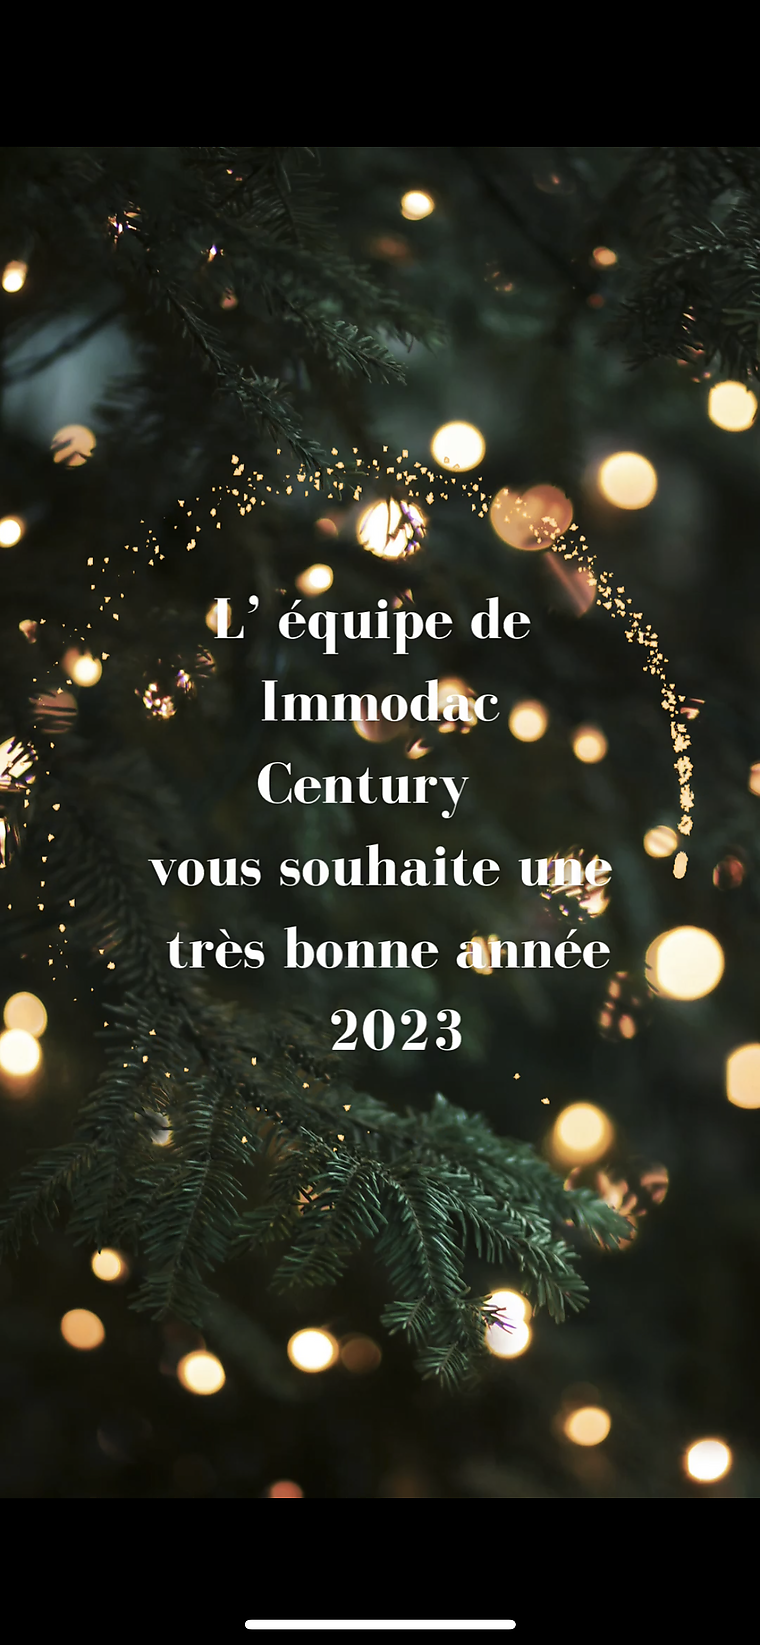 L'equip de construcció i renovació d'Immodac Century us desitja un molt feliç any nou i un feliç any nou 2023.